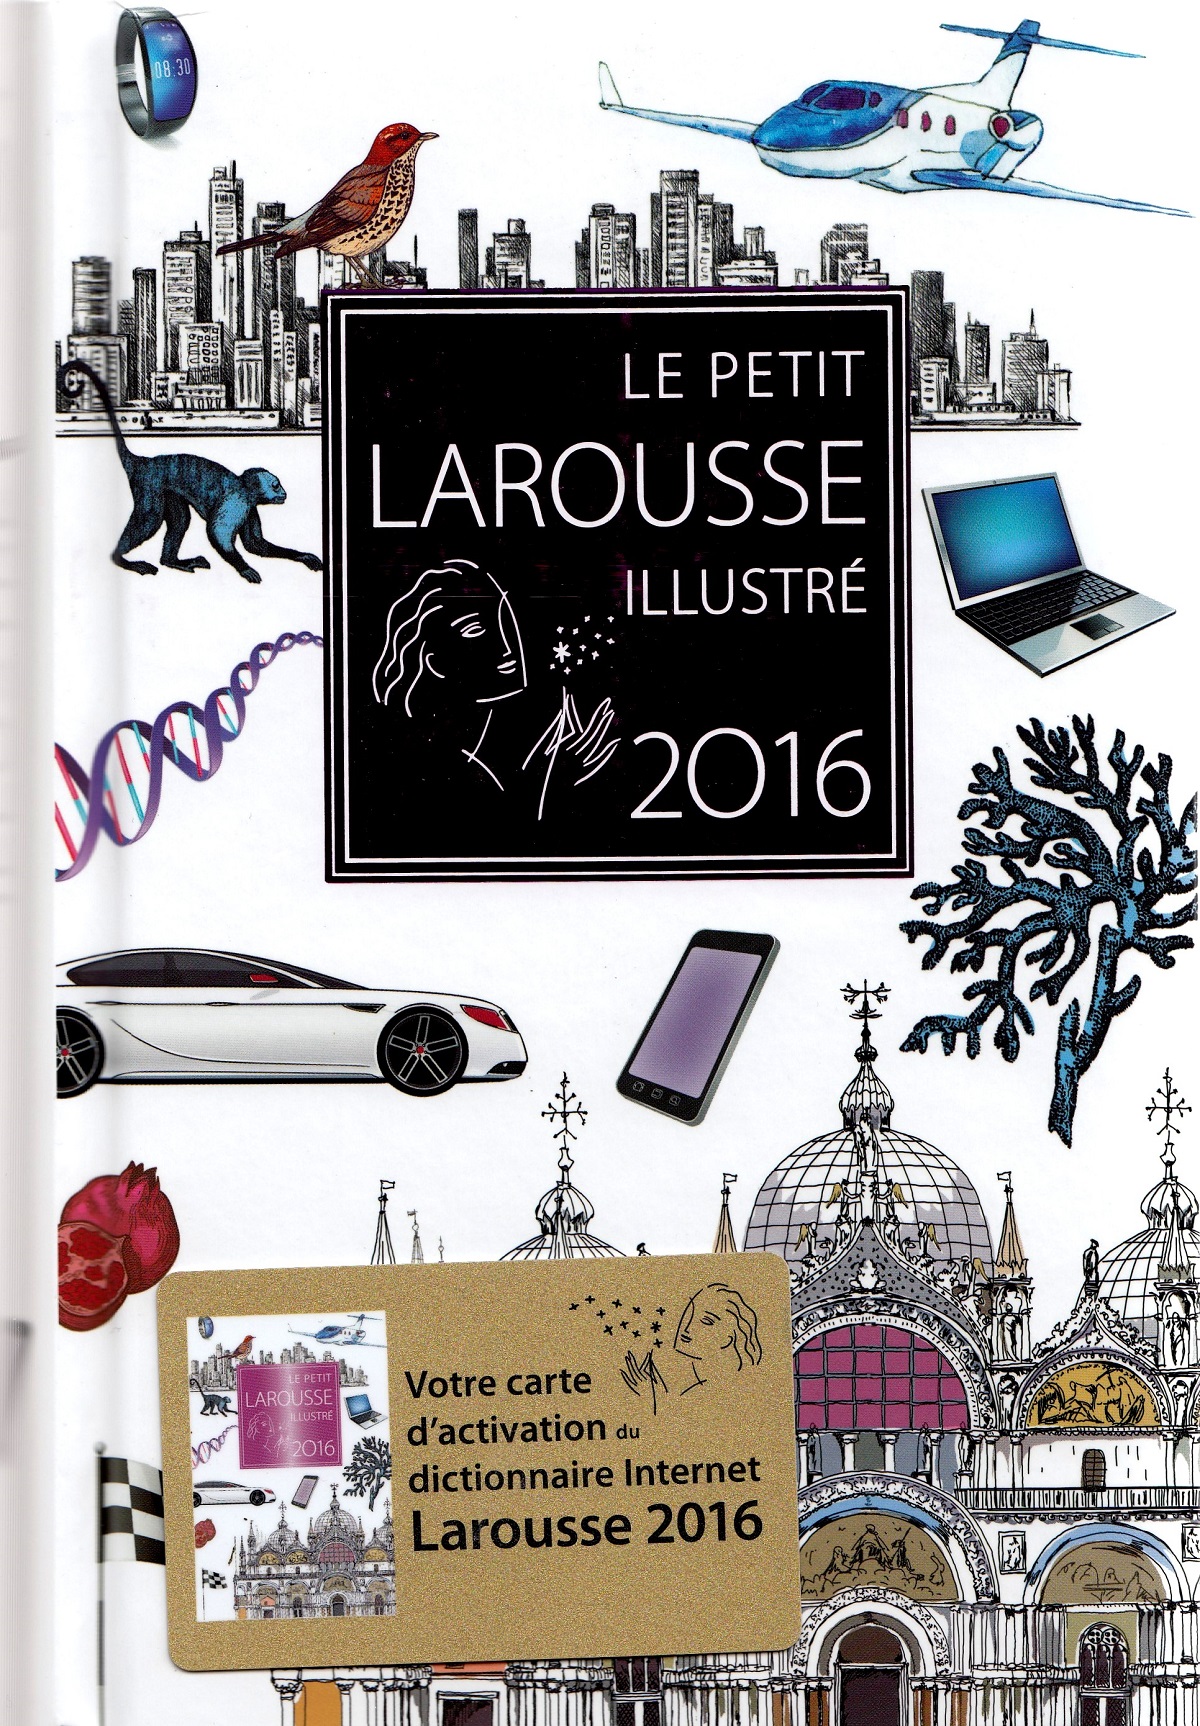 Le Petit Larousse Illustre 2016